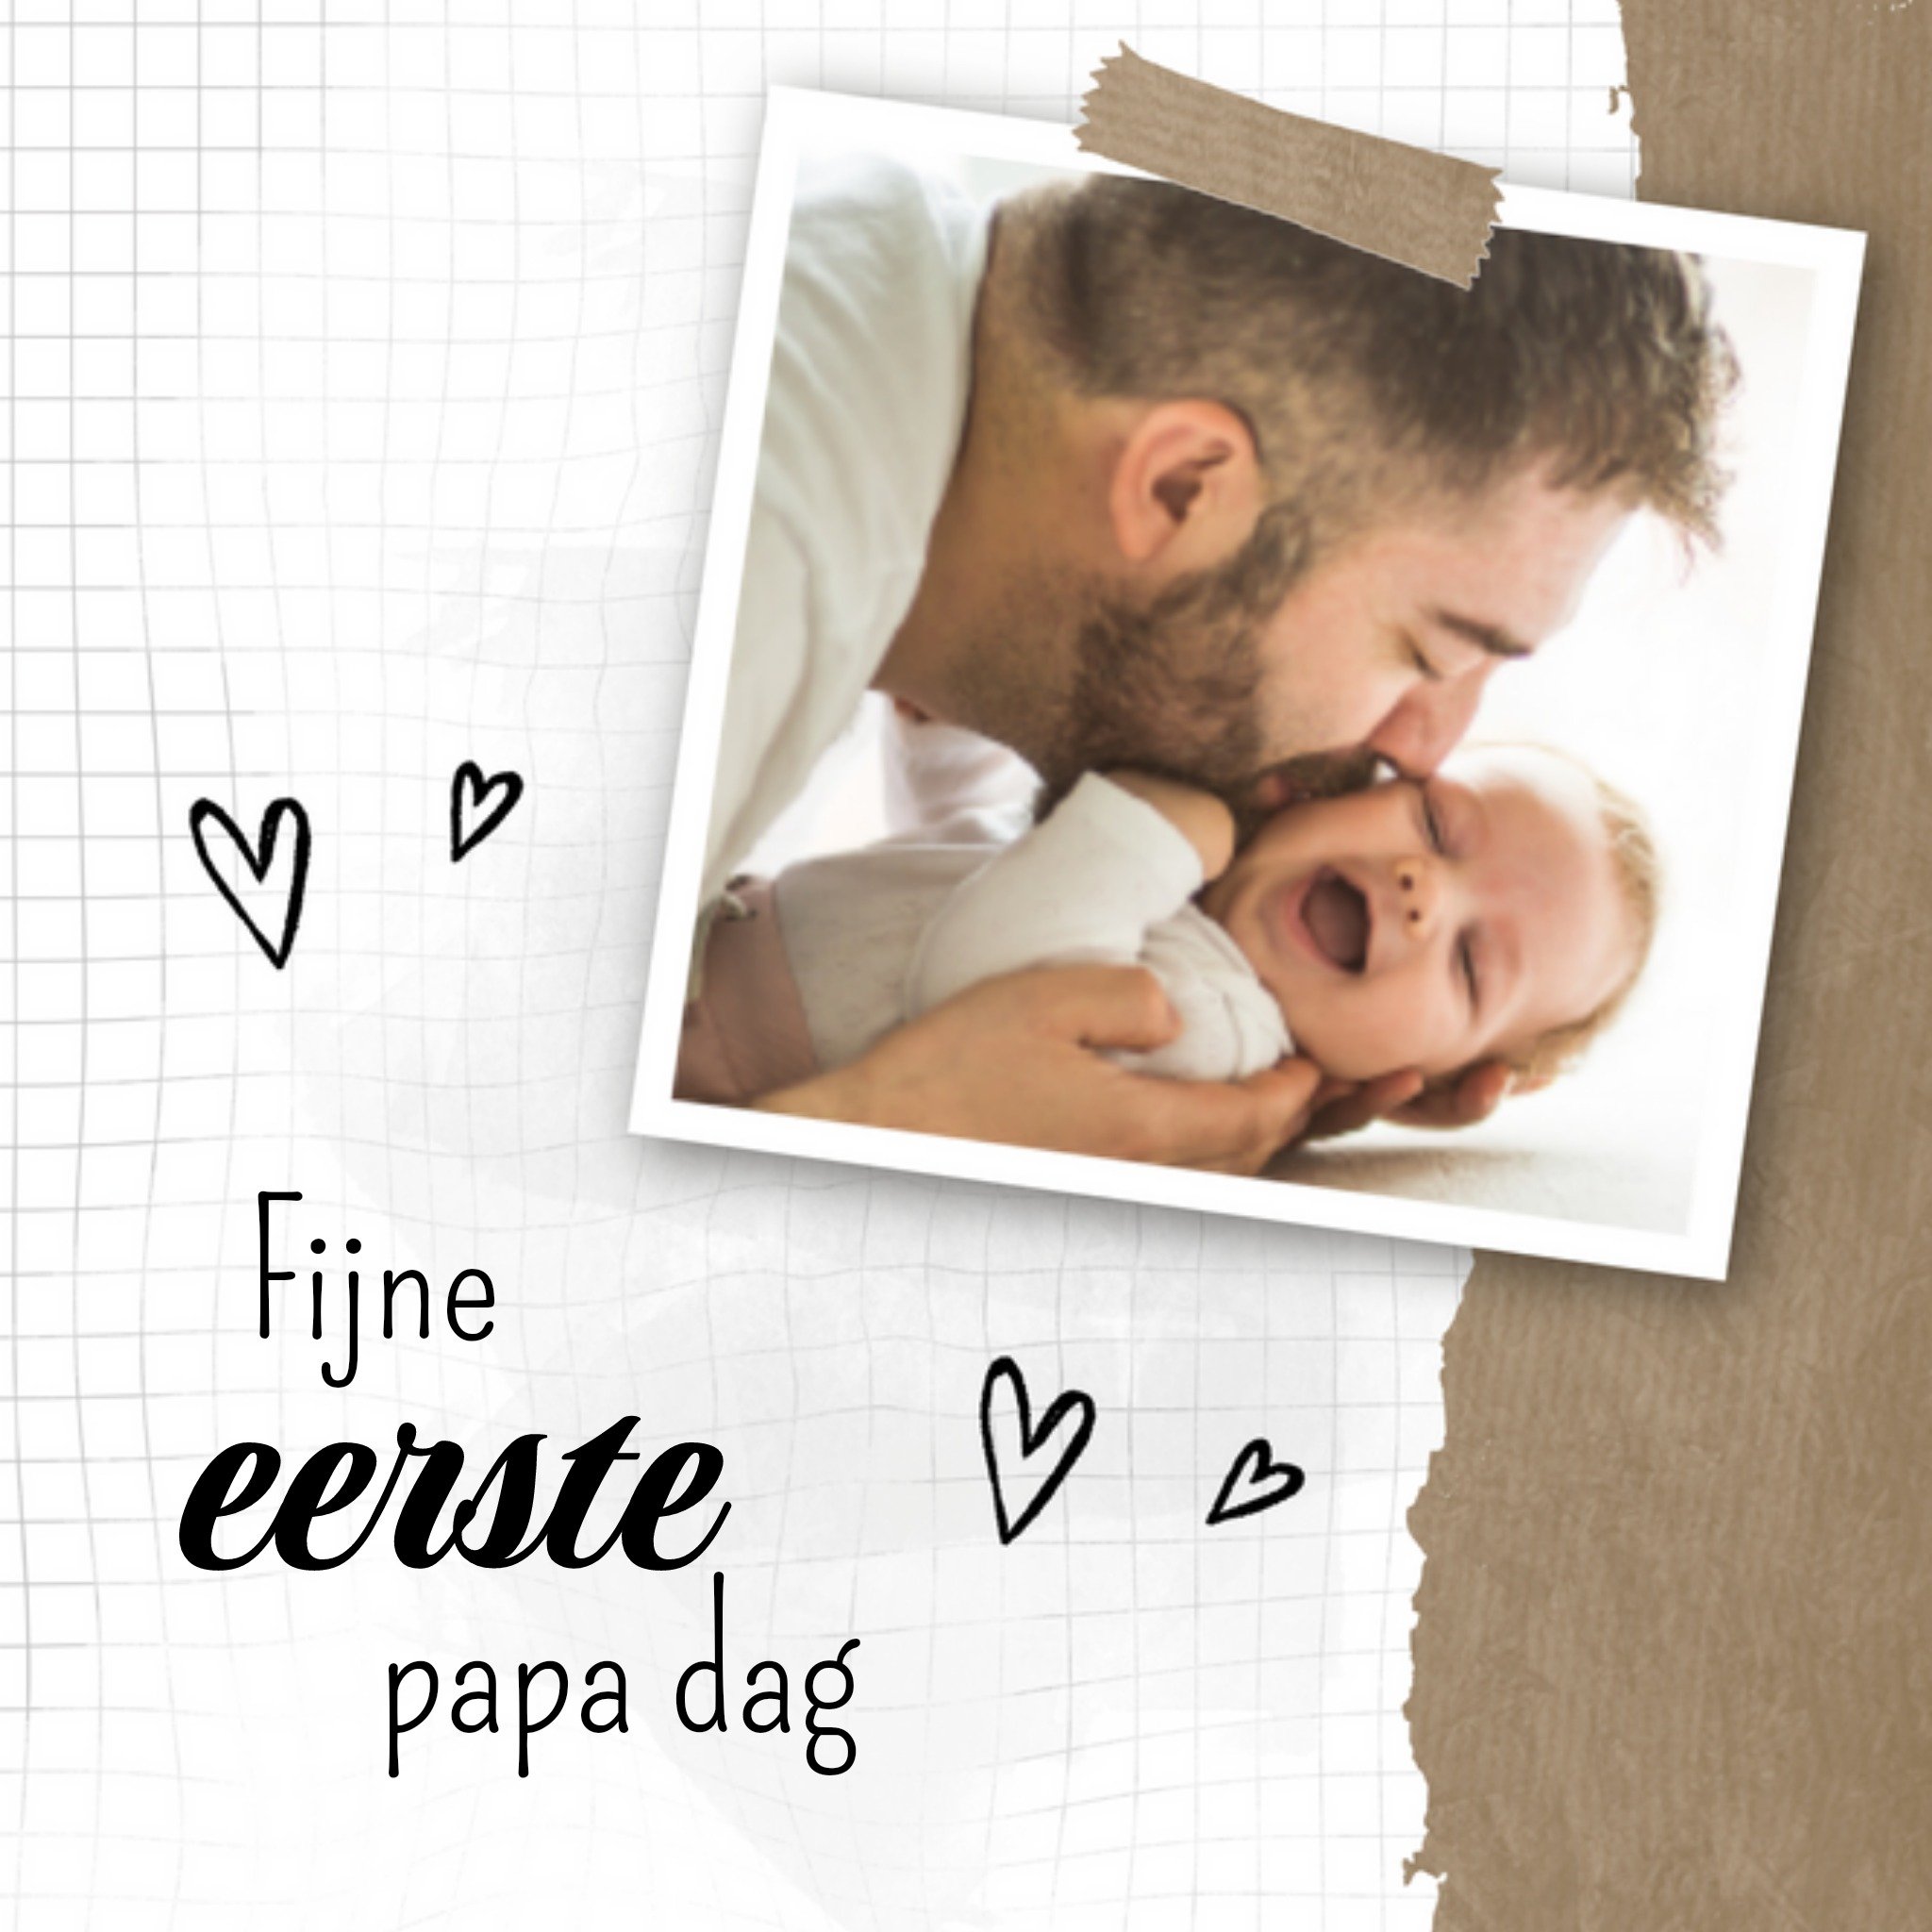 Vaderdagkaart - foto - eerste papa dag